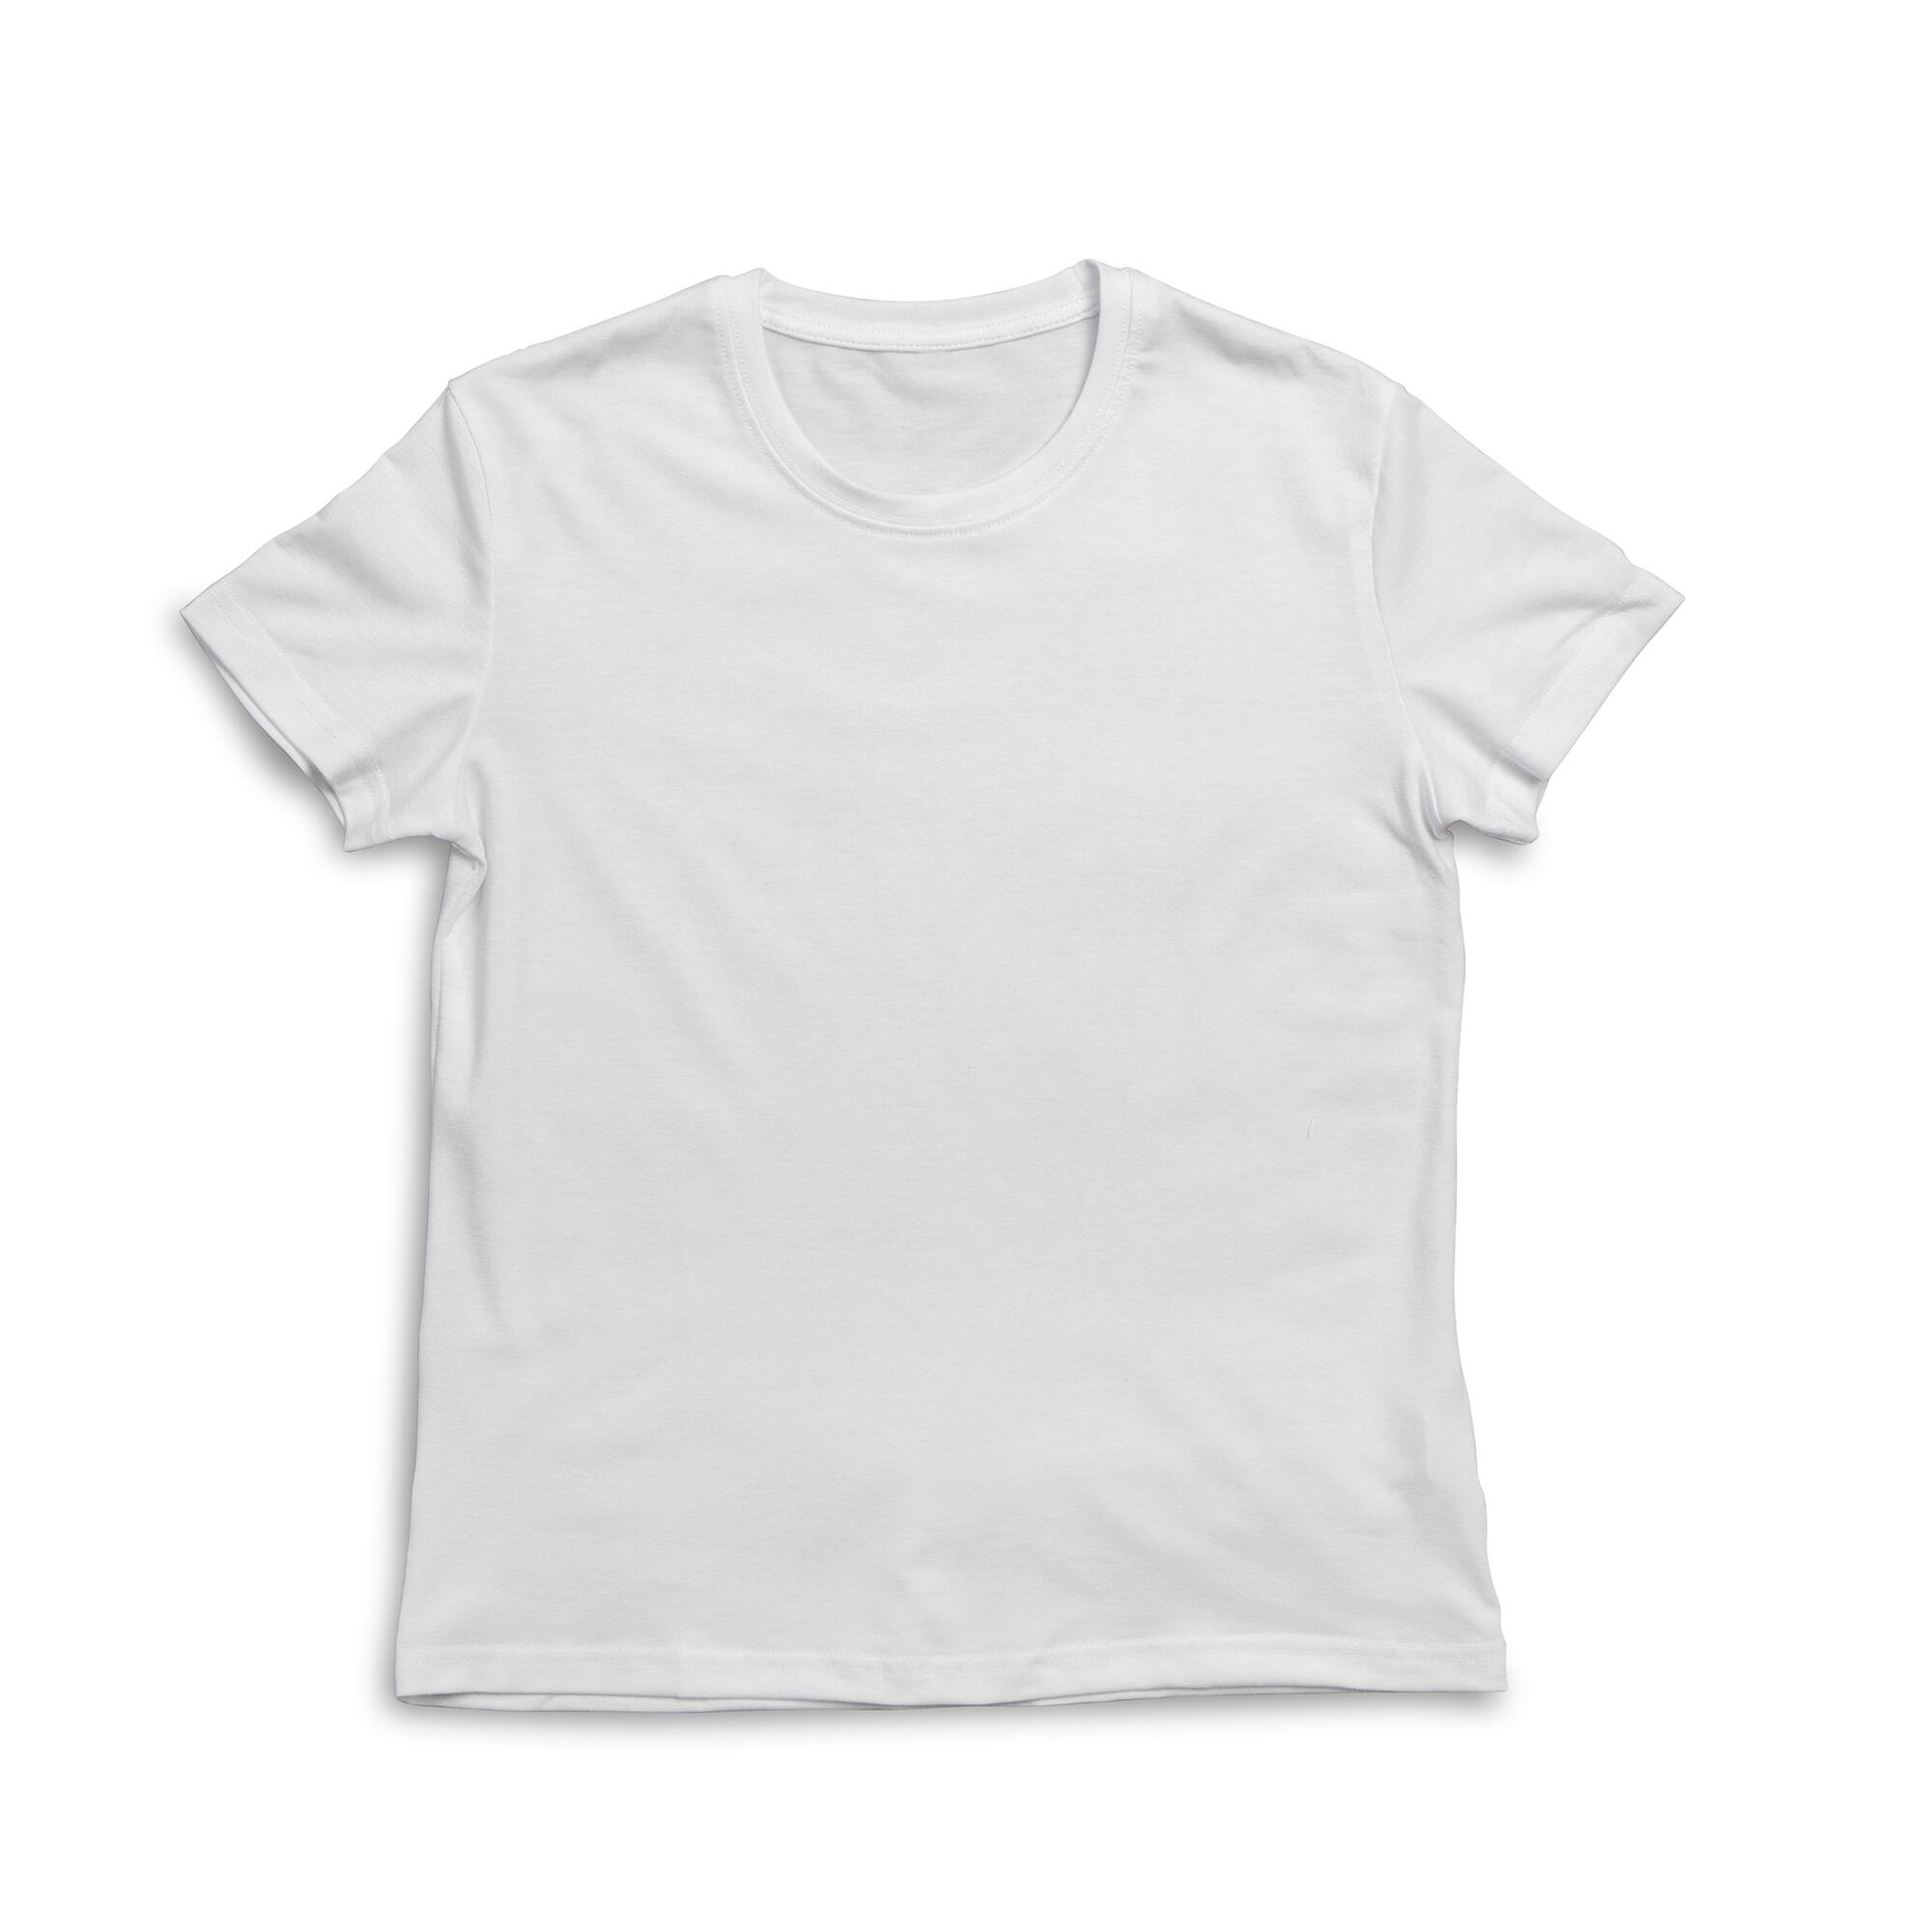 plain white t shirt michaels